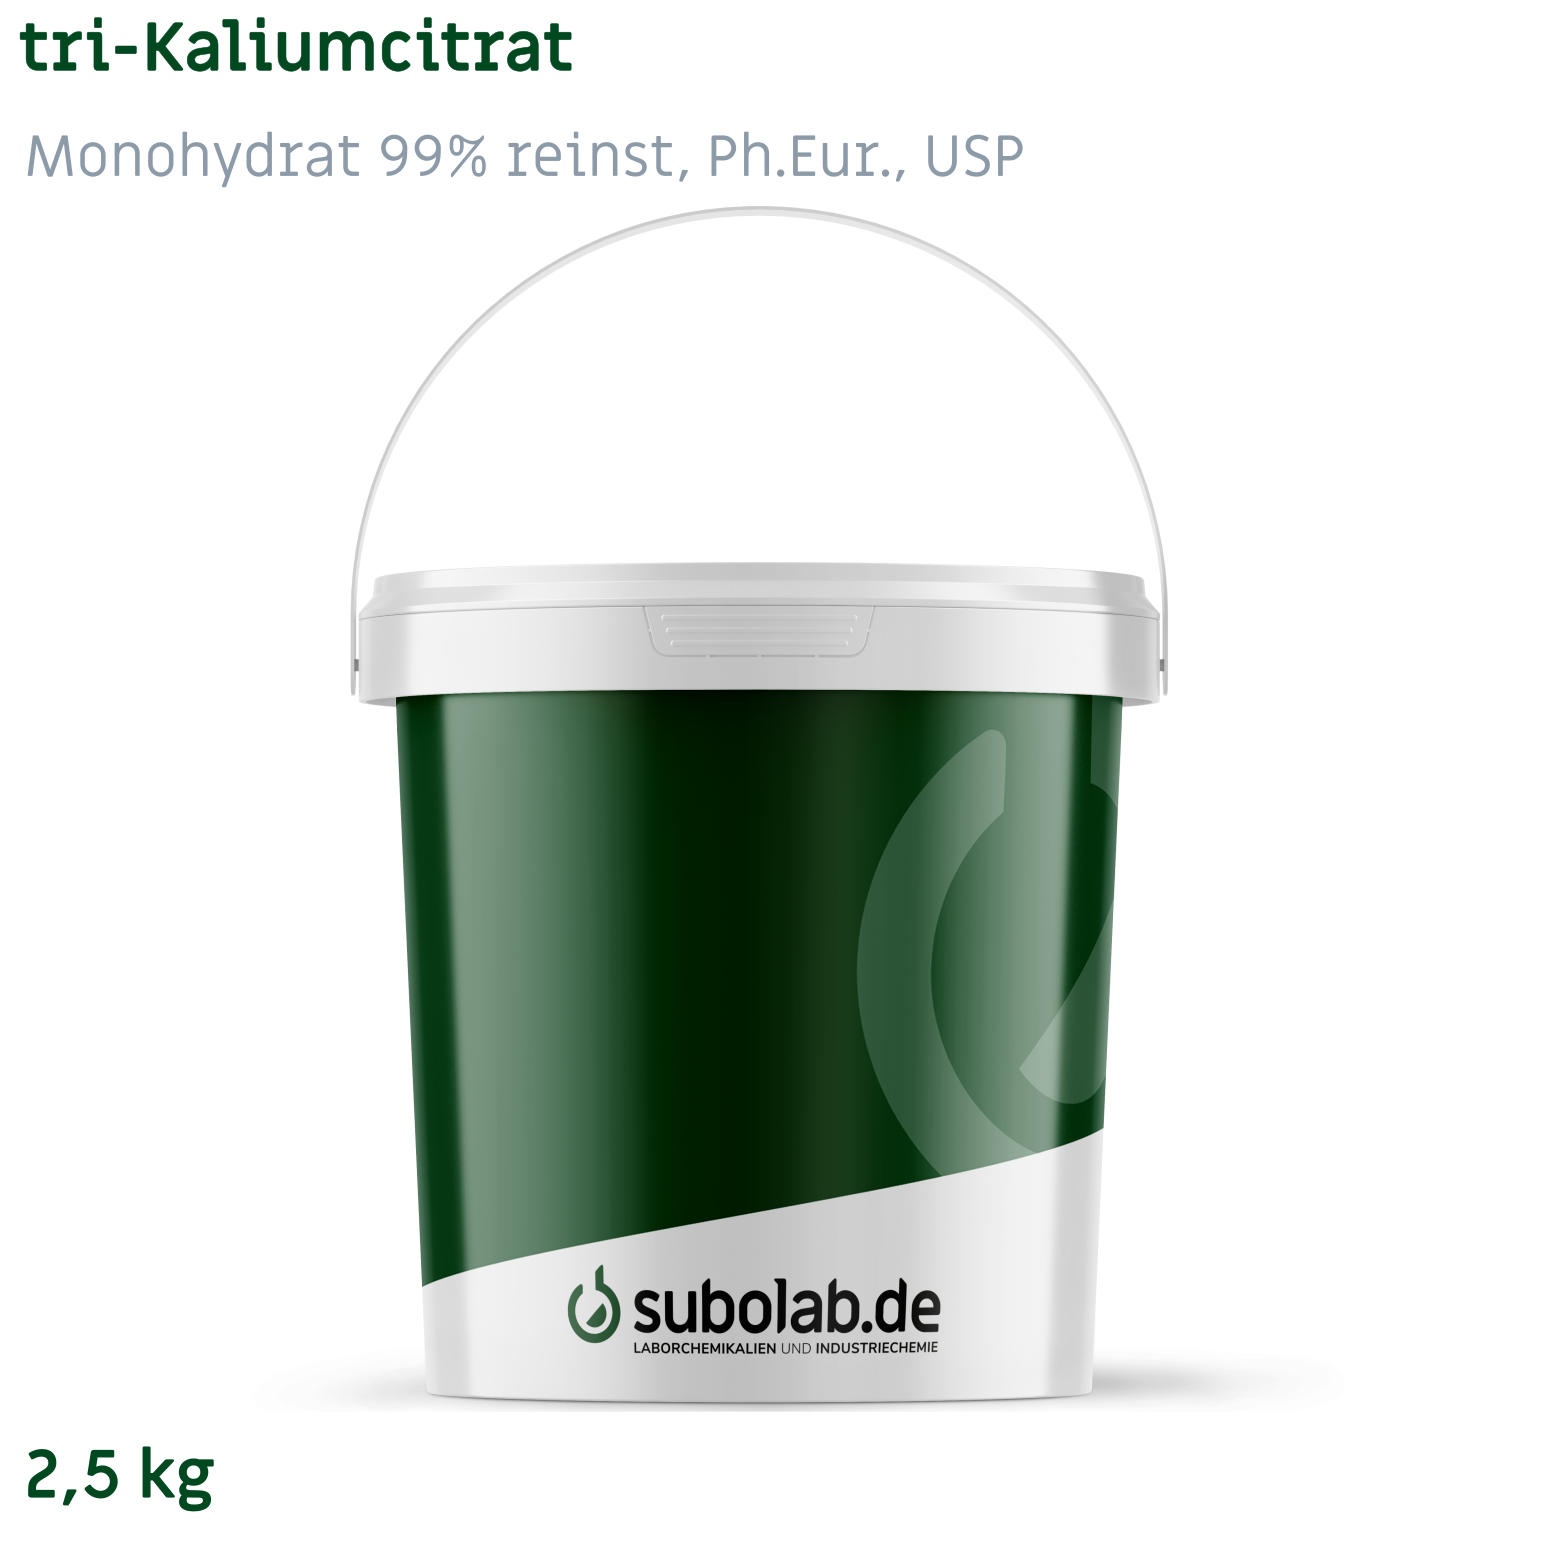 Bild von tri-Kaliumcitrat - Monohydrat 99% reinst, Ph.Eur., USP (2,5 kg)